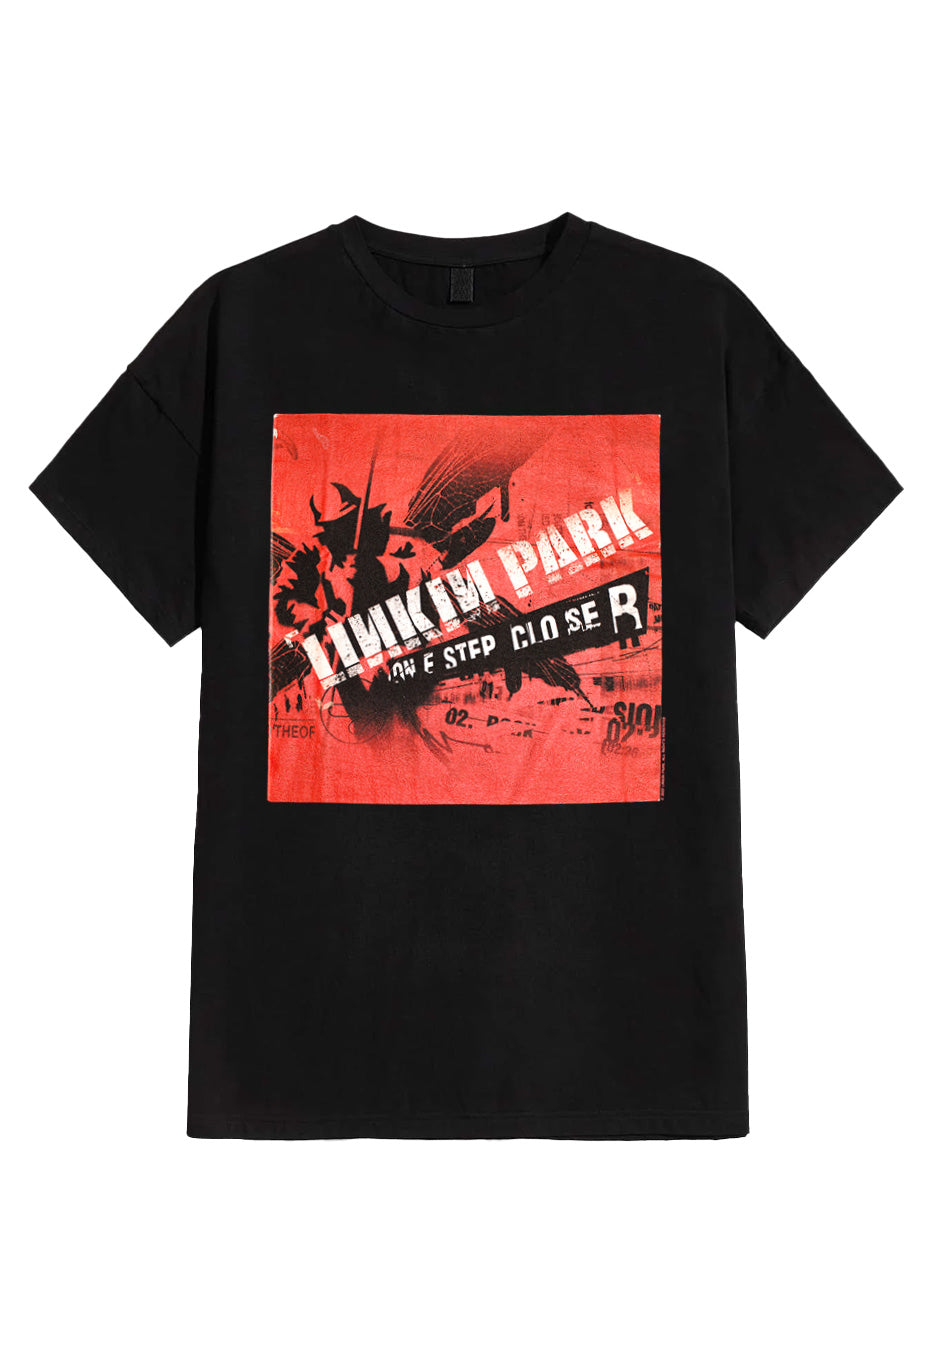 Linkin Park - One Step Closer Chest - T-Shirt